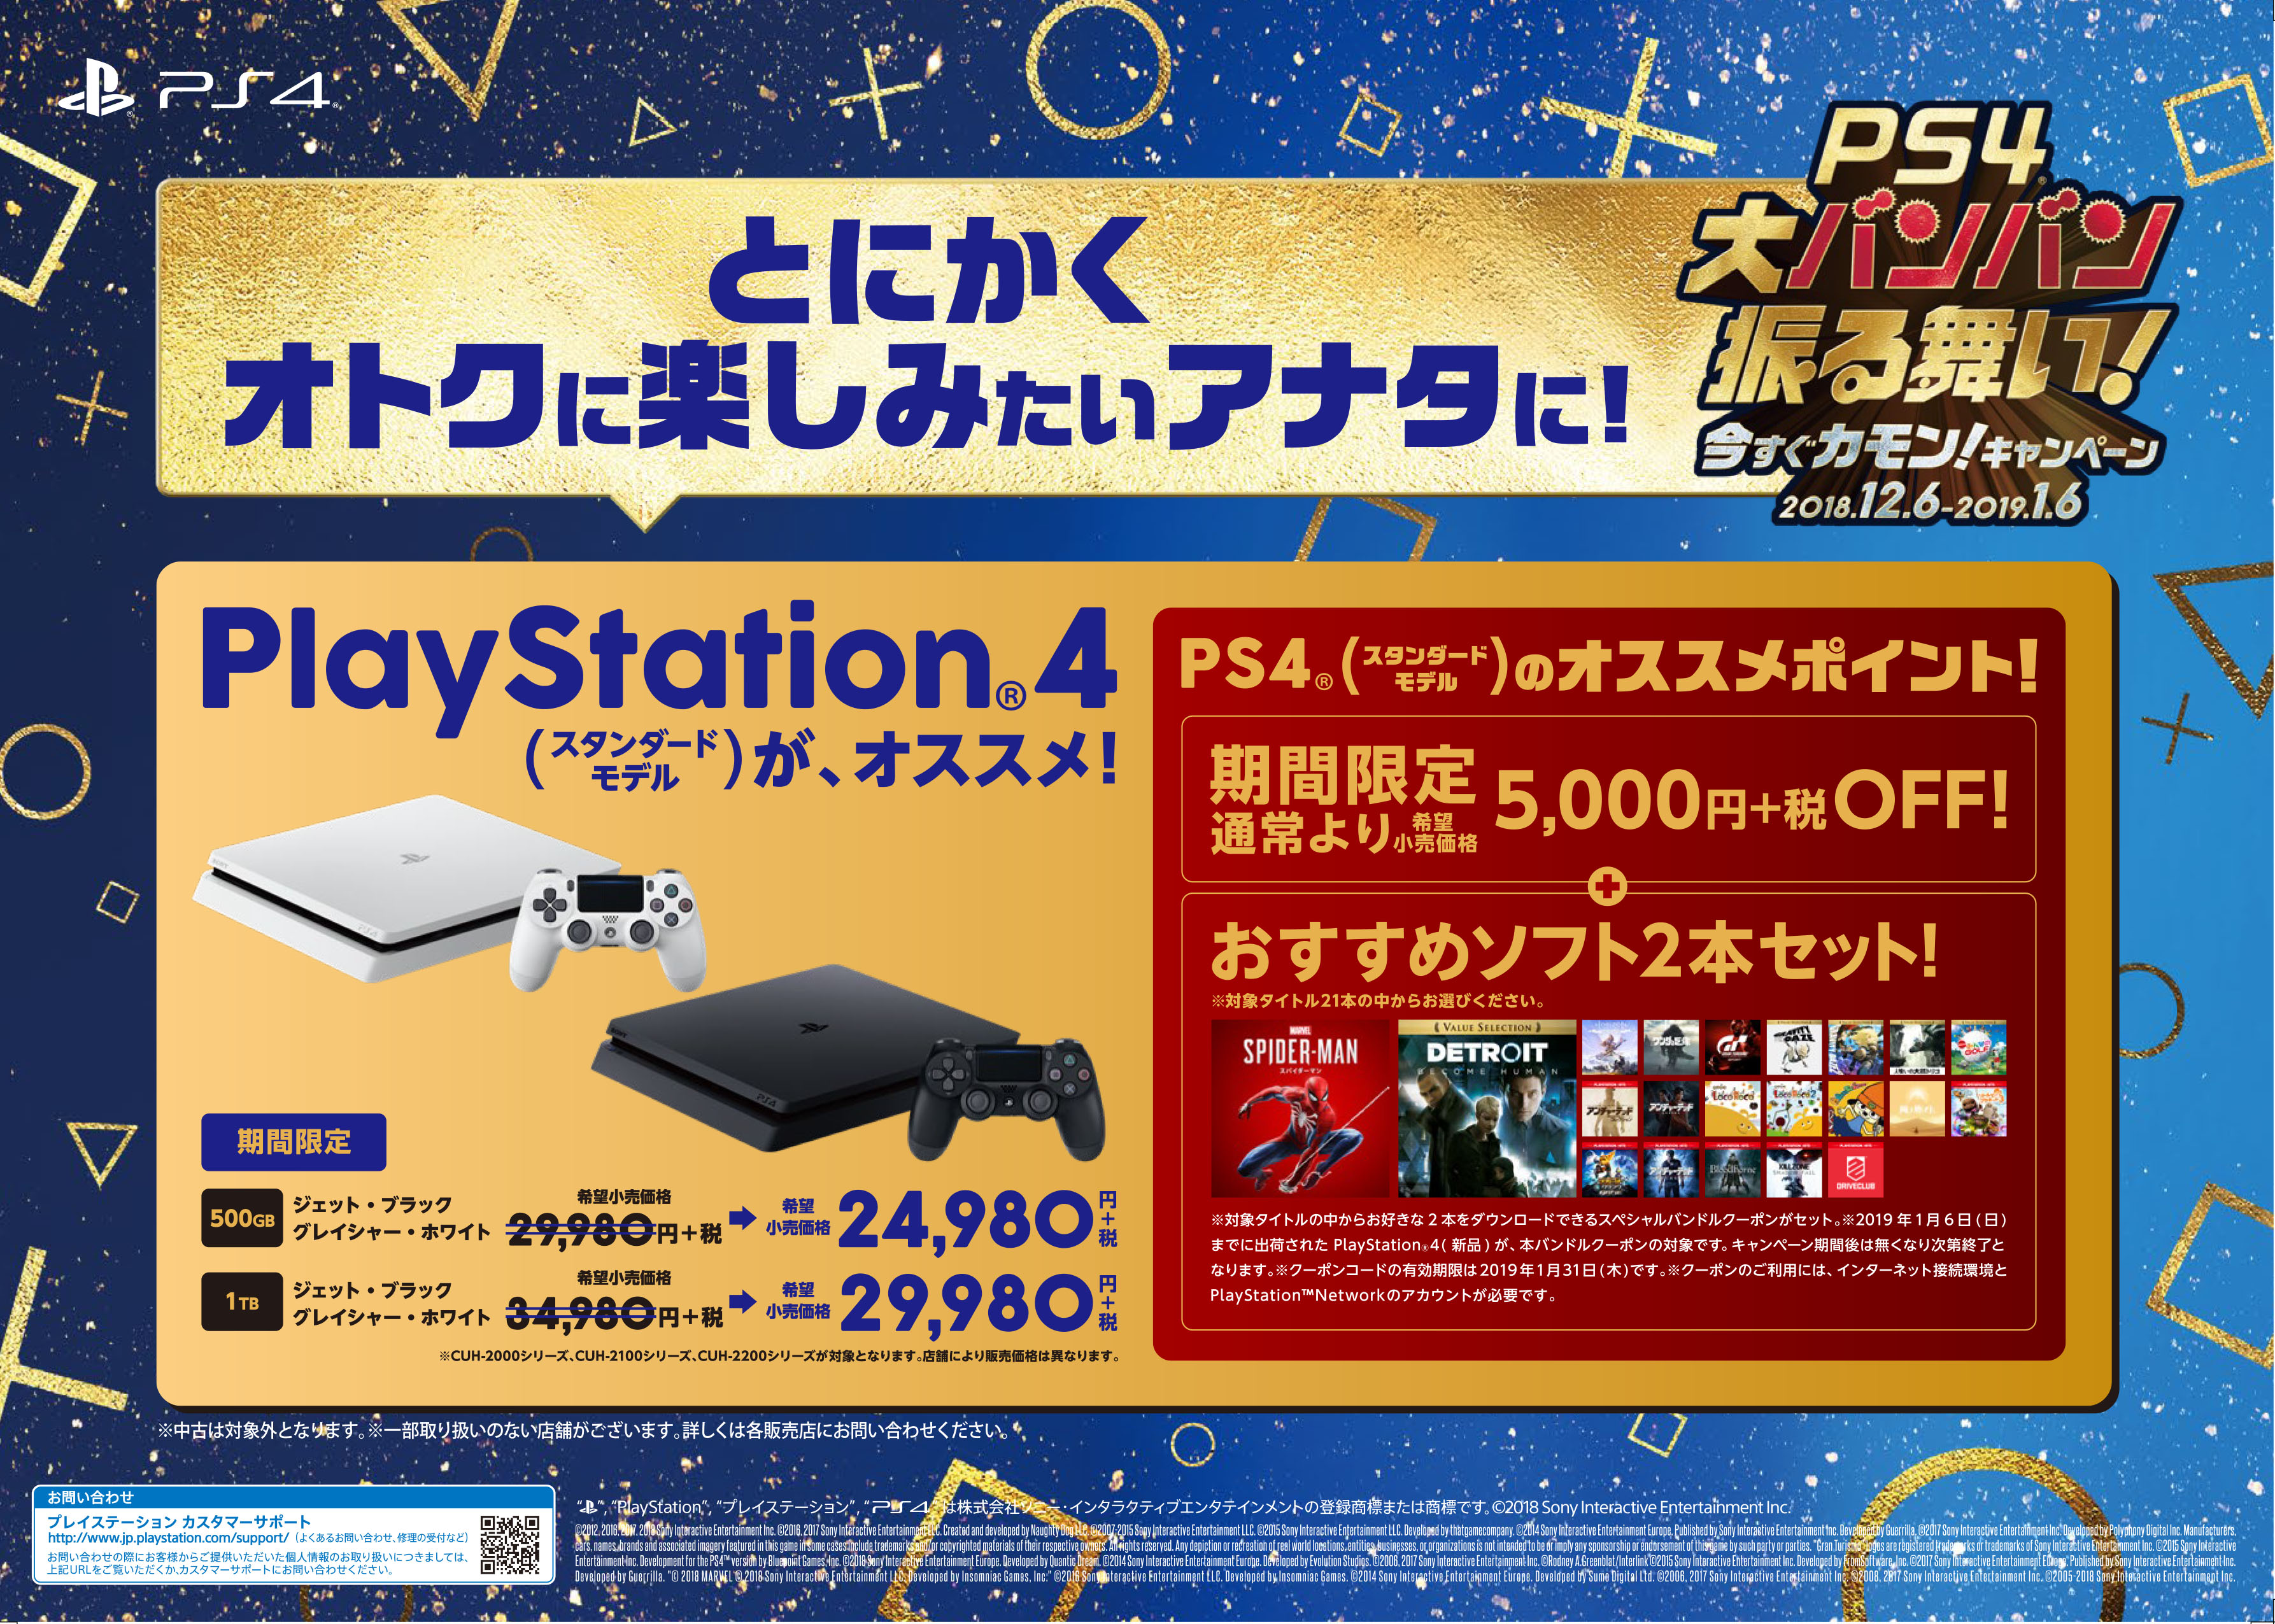 PS4・PS VRの年末年始セールが開始。PS4は5000円引き、PSVRは10000円